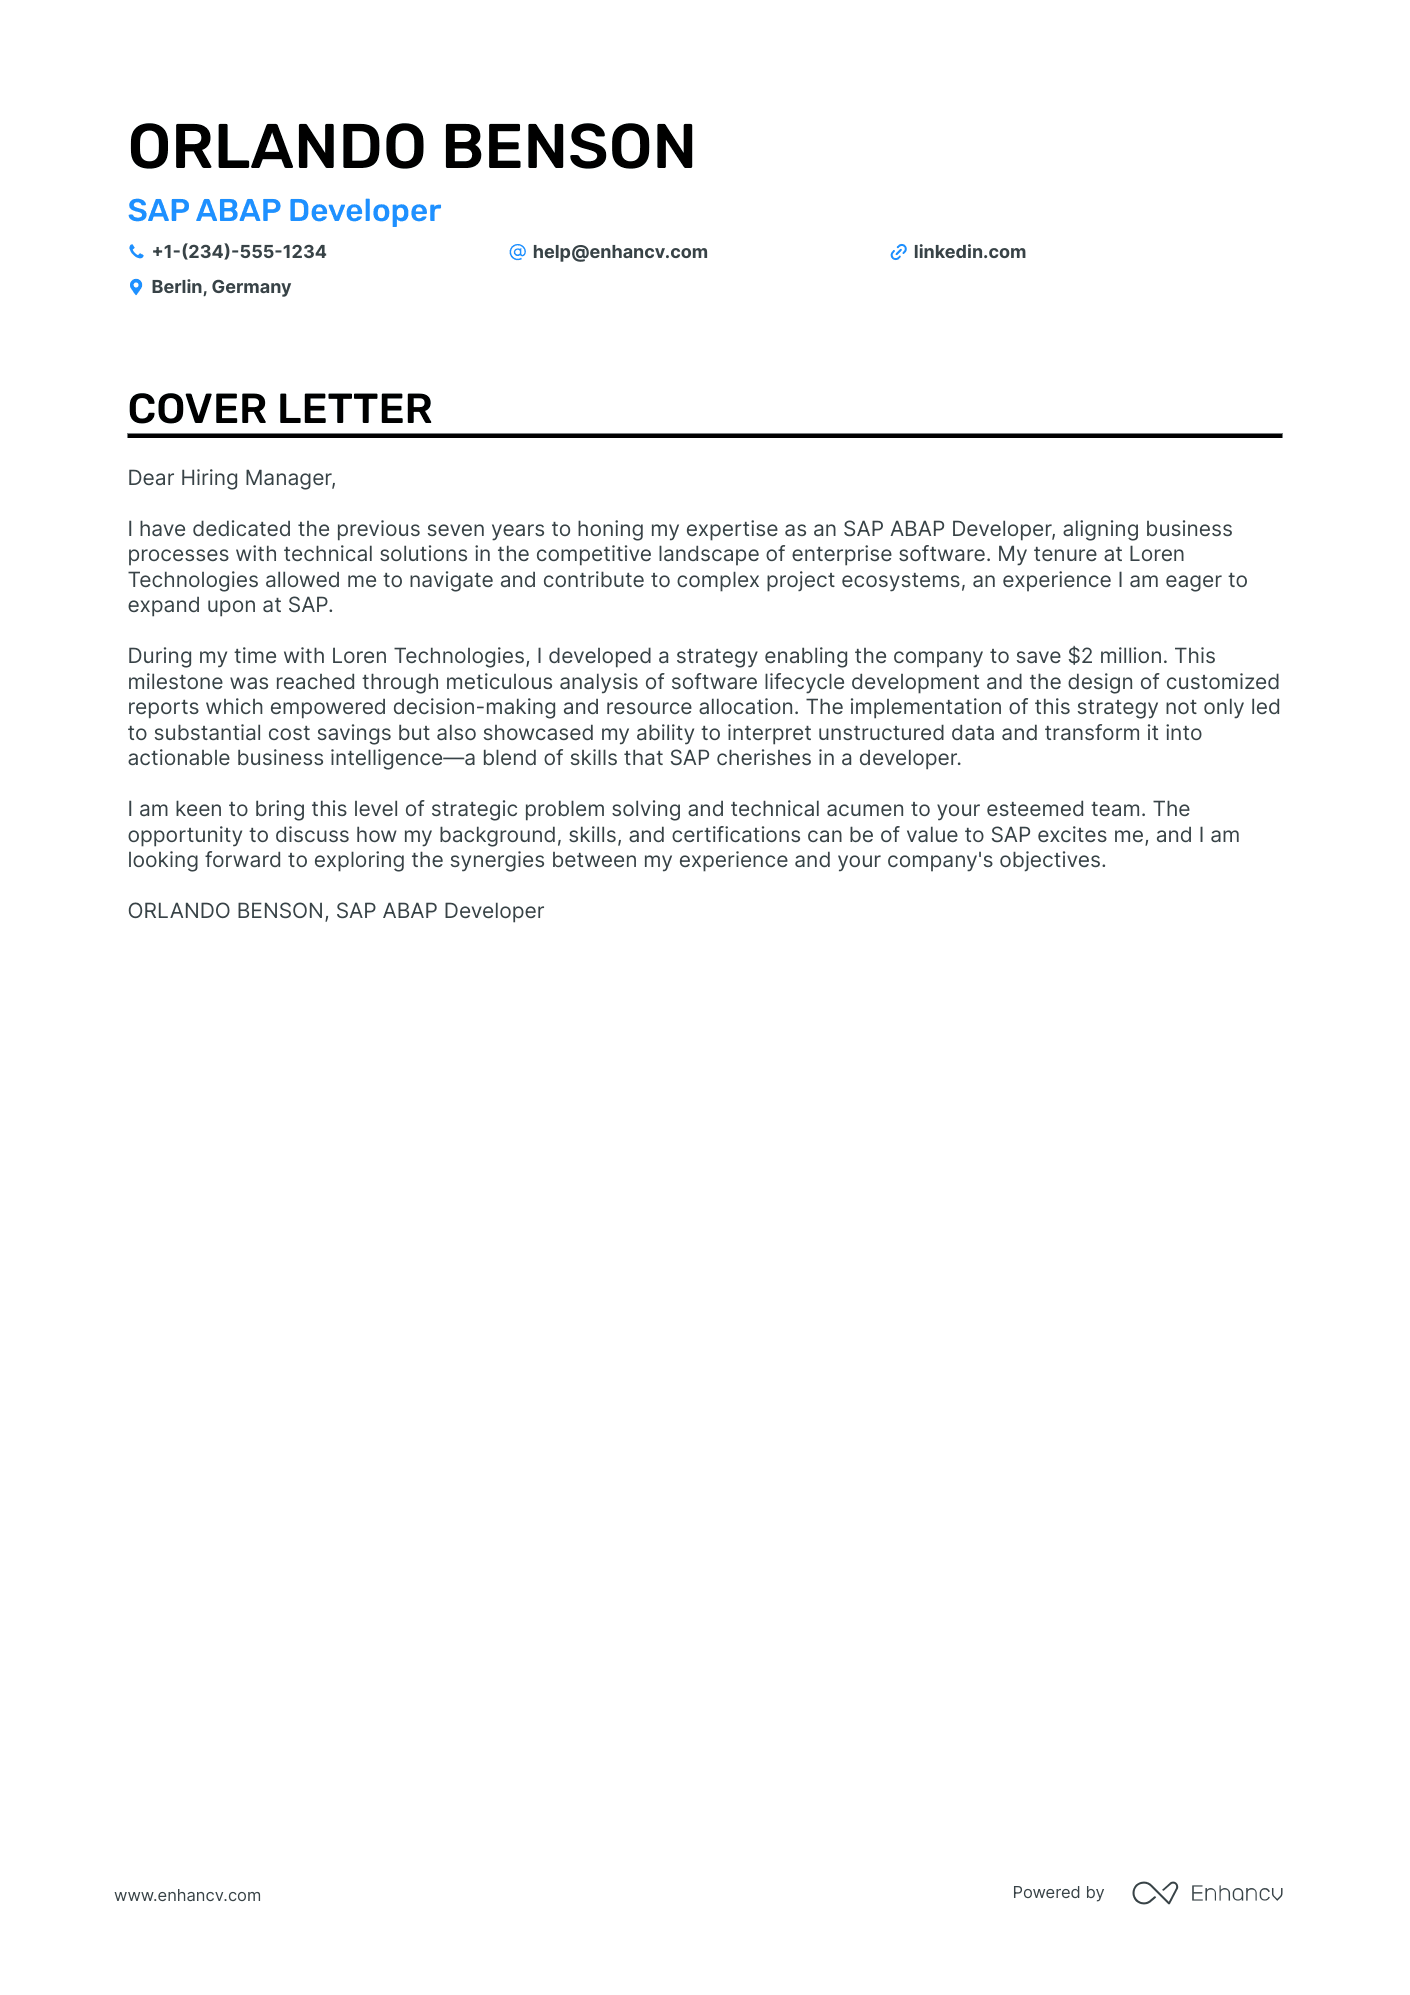 SAP cover letter